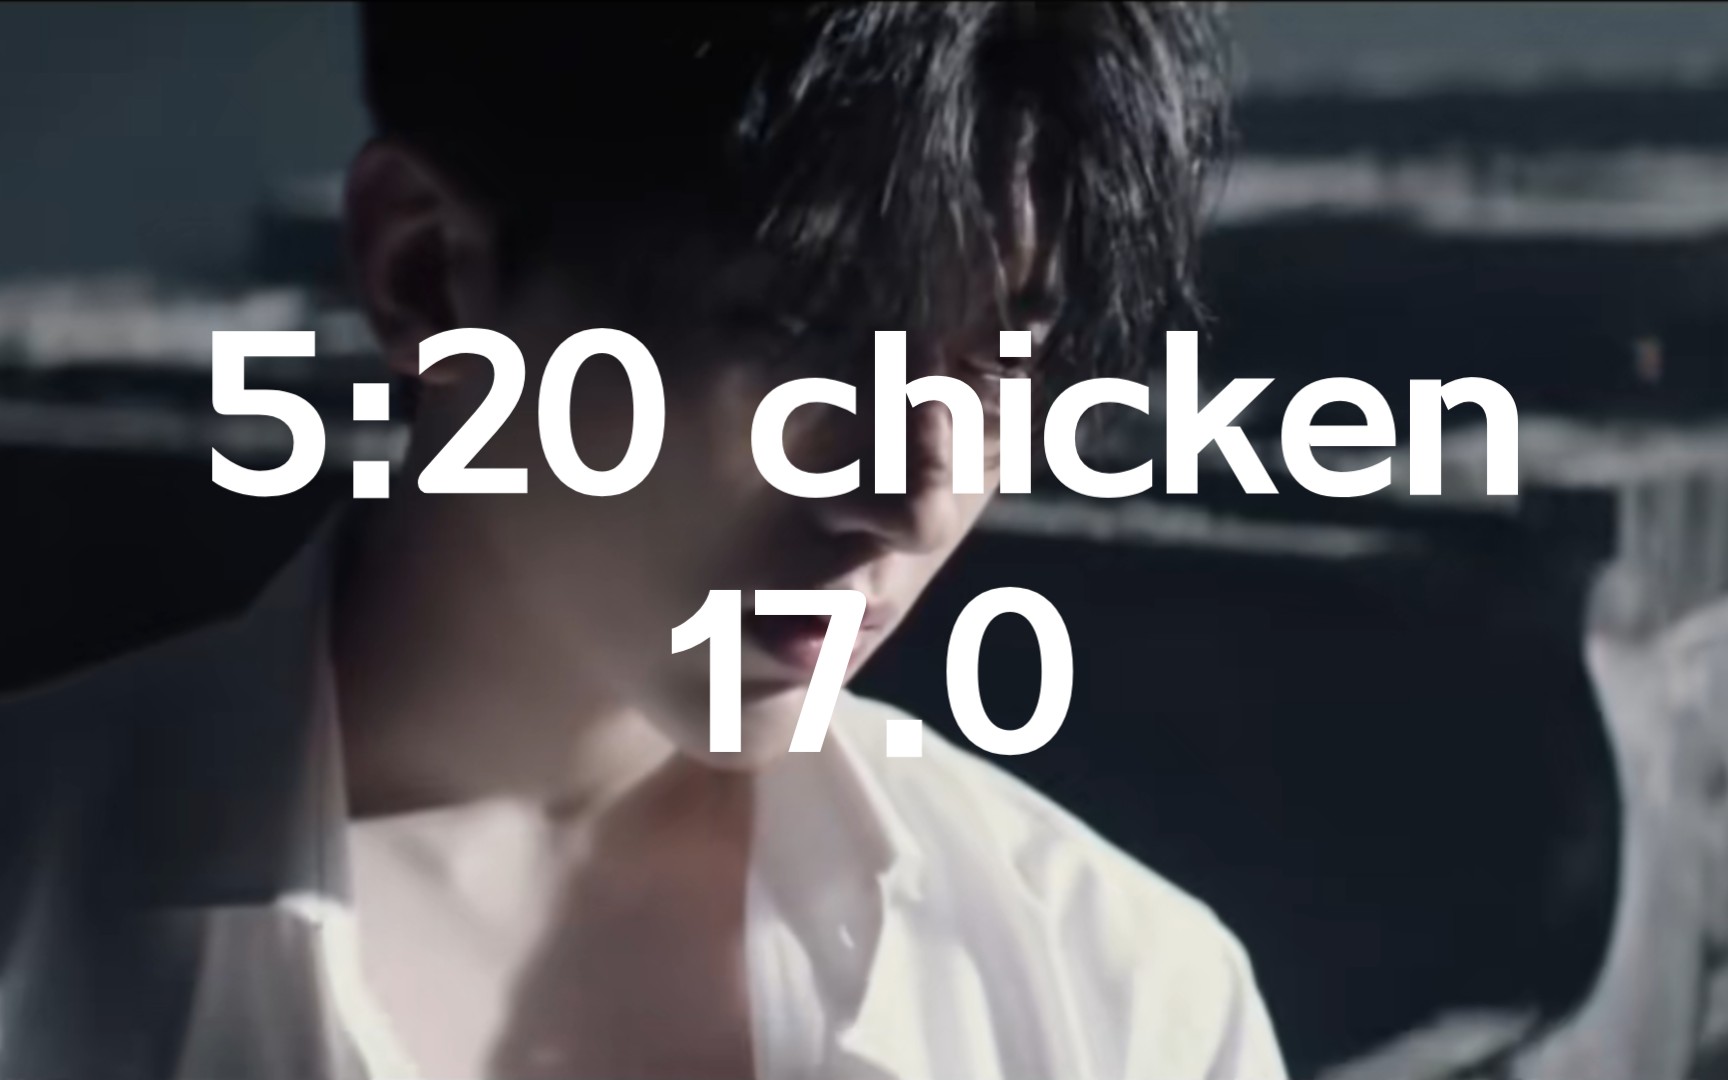 《5:20 chicken》《对接17.0》